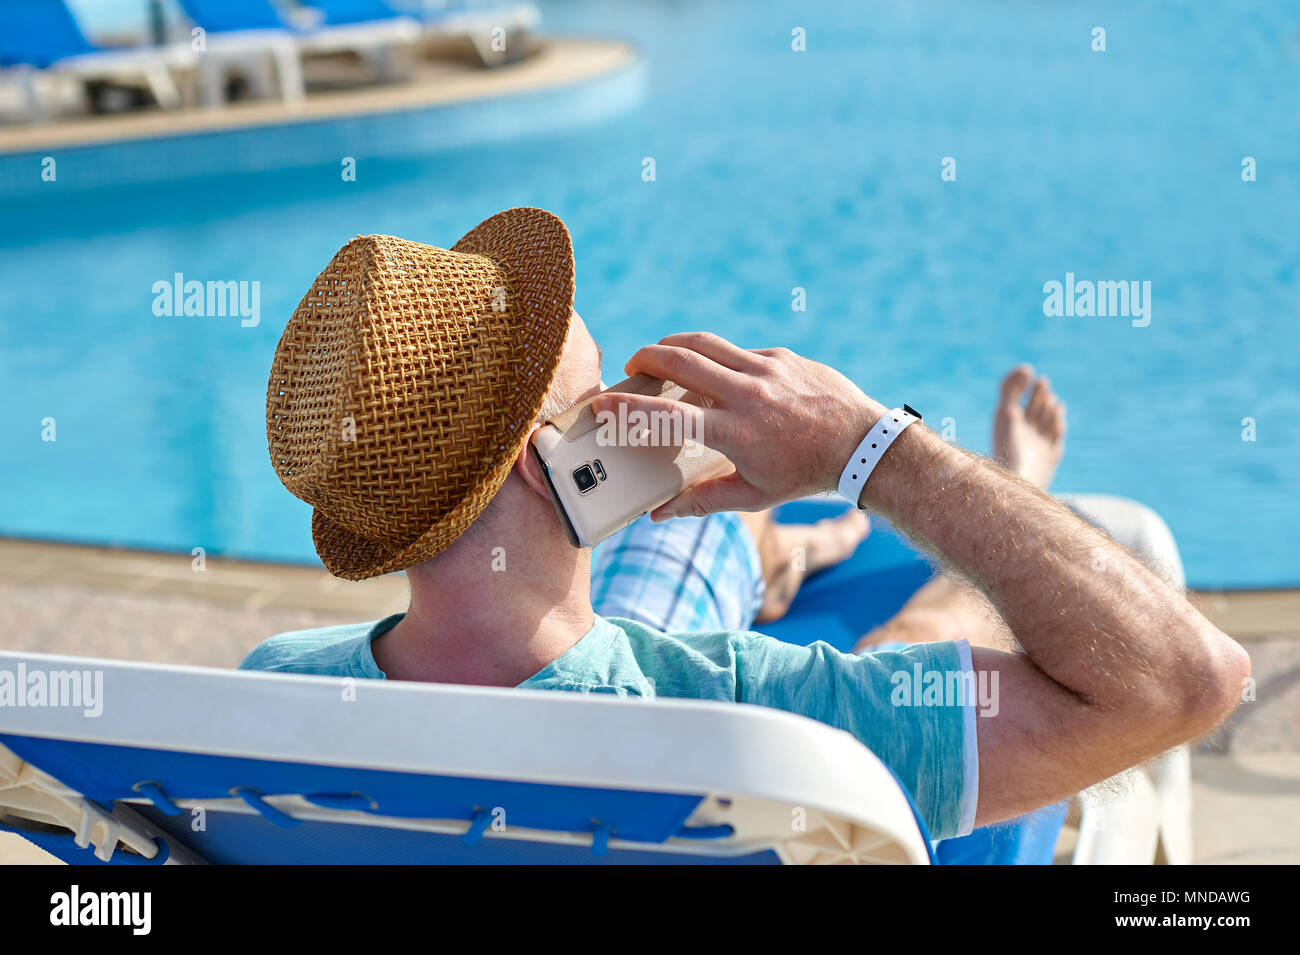 El hombre a través de teléfono móvil en vacaciones en la piscina en el hotel, el concepto de un freelancer trabajando por sí mismo sobre viajes y vacaciones Foto de stock